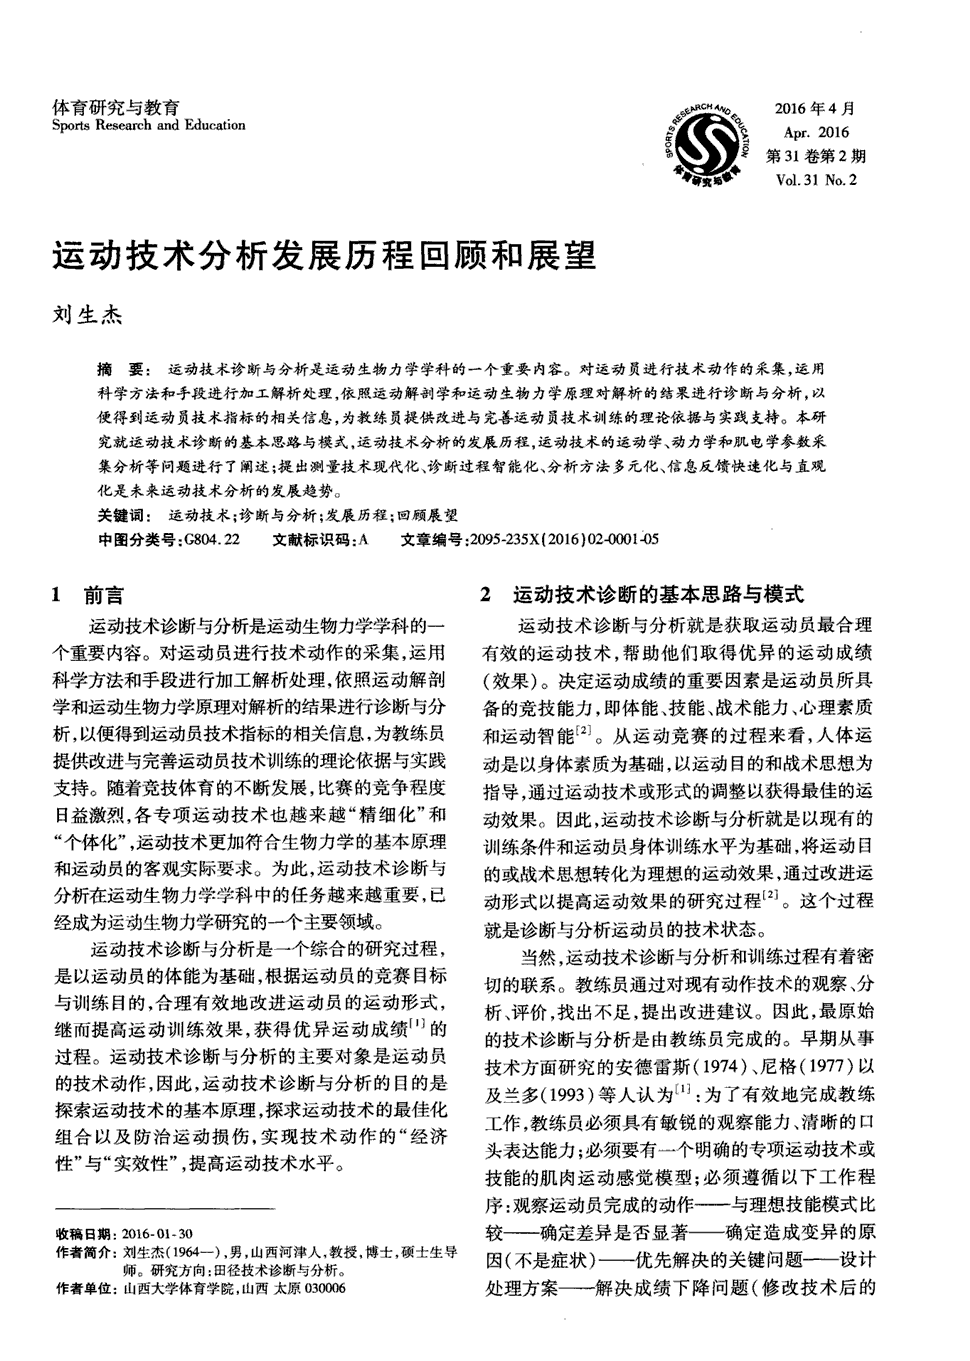 《体育研究与教育》2016年第2期1-5,共5页刘生杰